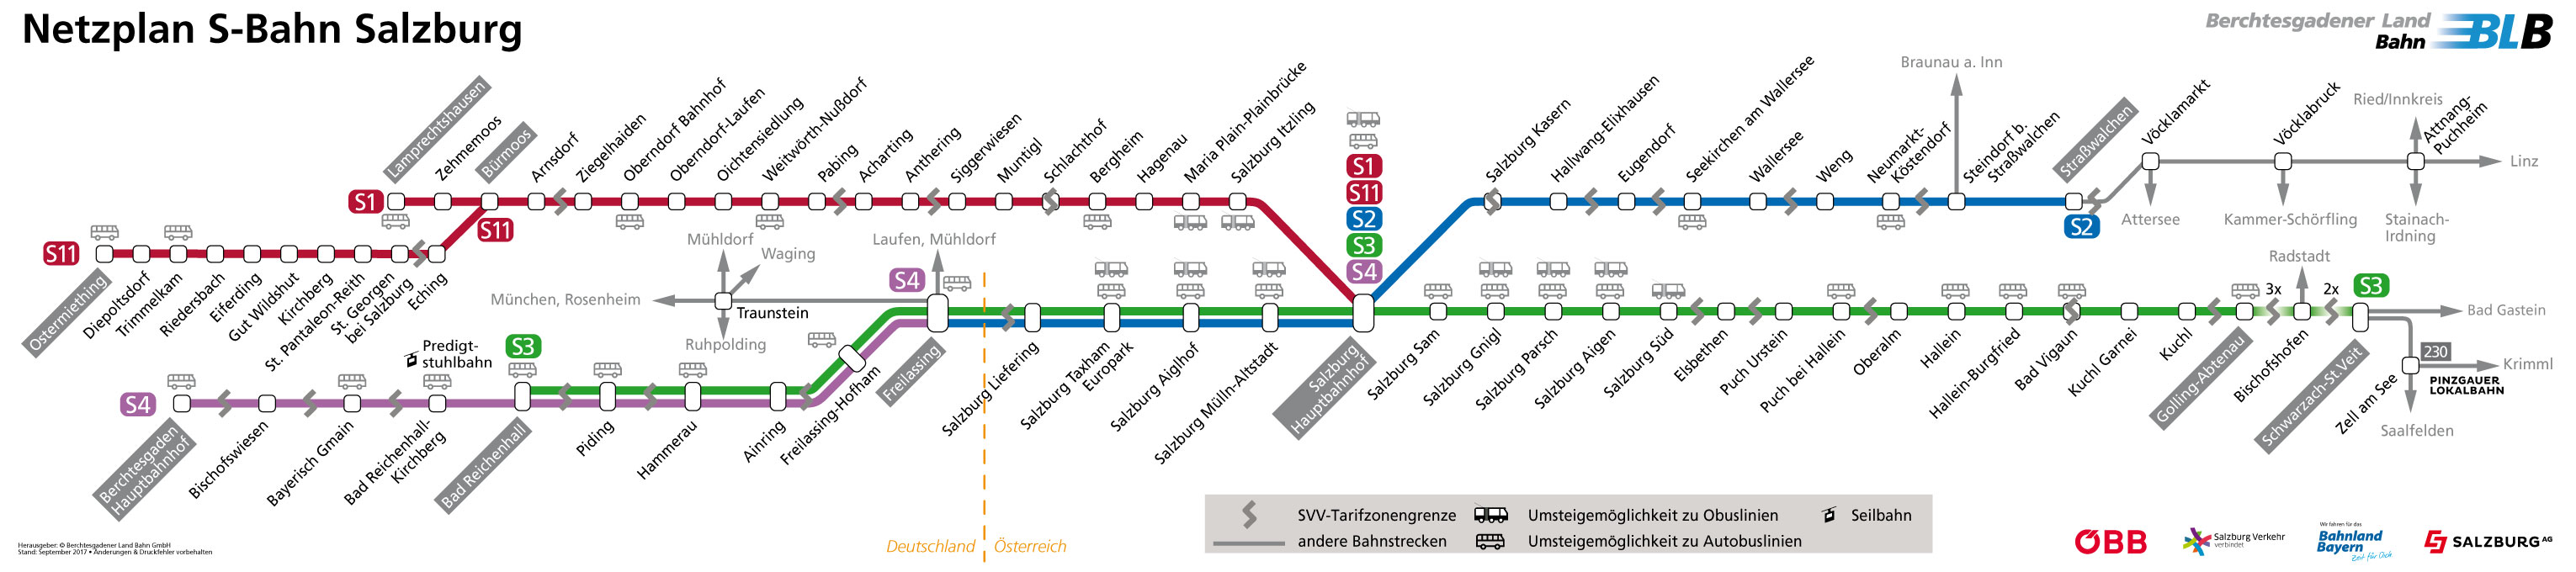 Berchtesgadener Land Bahn Netzplan